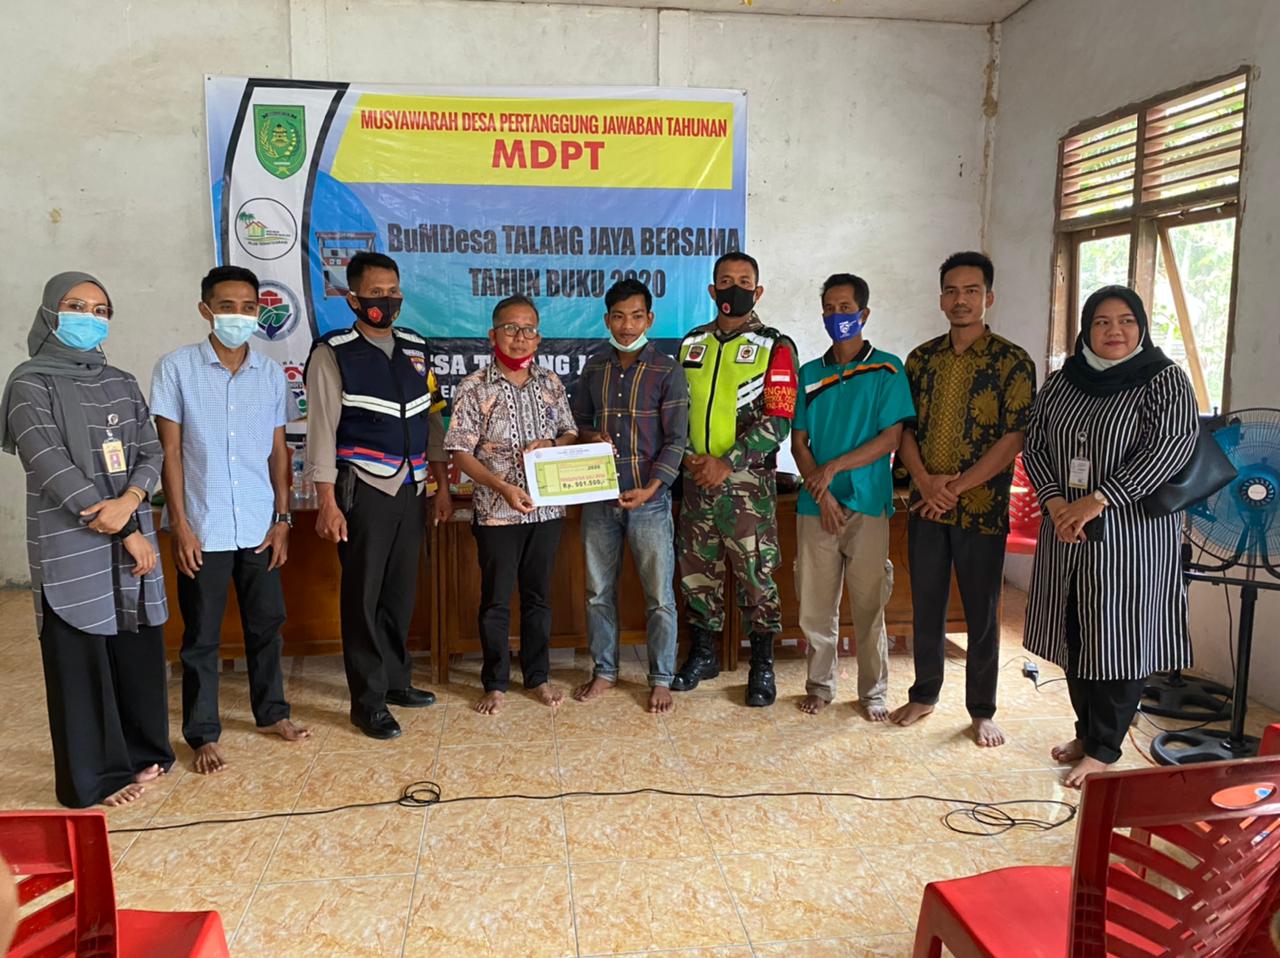 Beroprasinya Serta Gelar MDPT Tahun 2020, Kades Talangjangkang Kemuning Sampaikan Apresiasi Ke BUMDes Talang Jaya Bersama